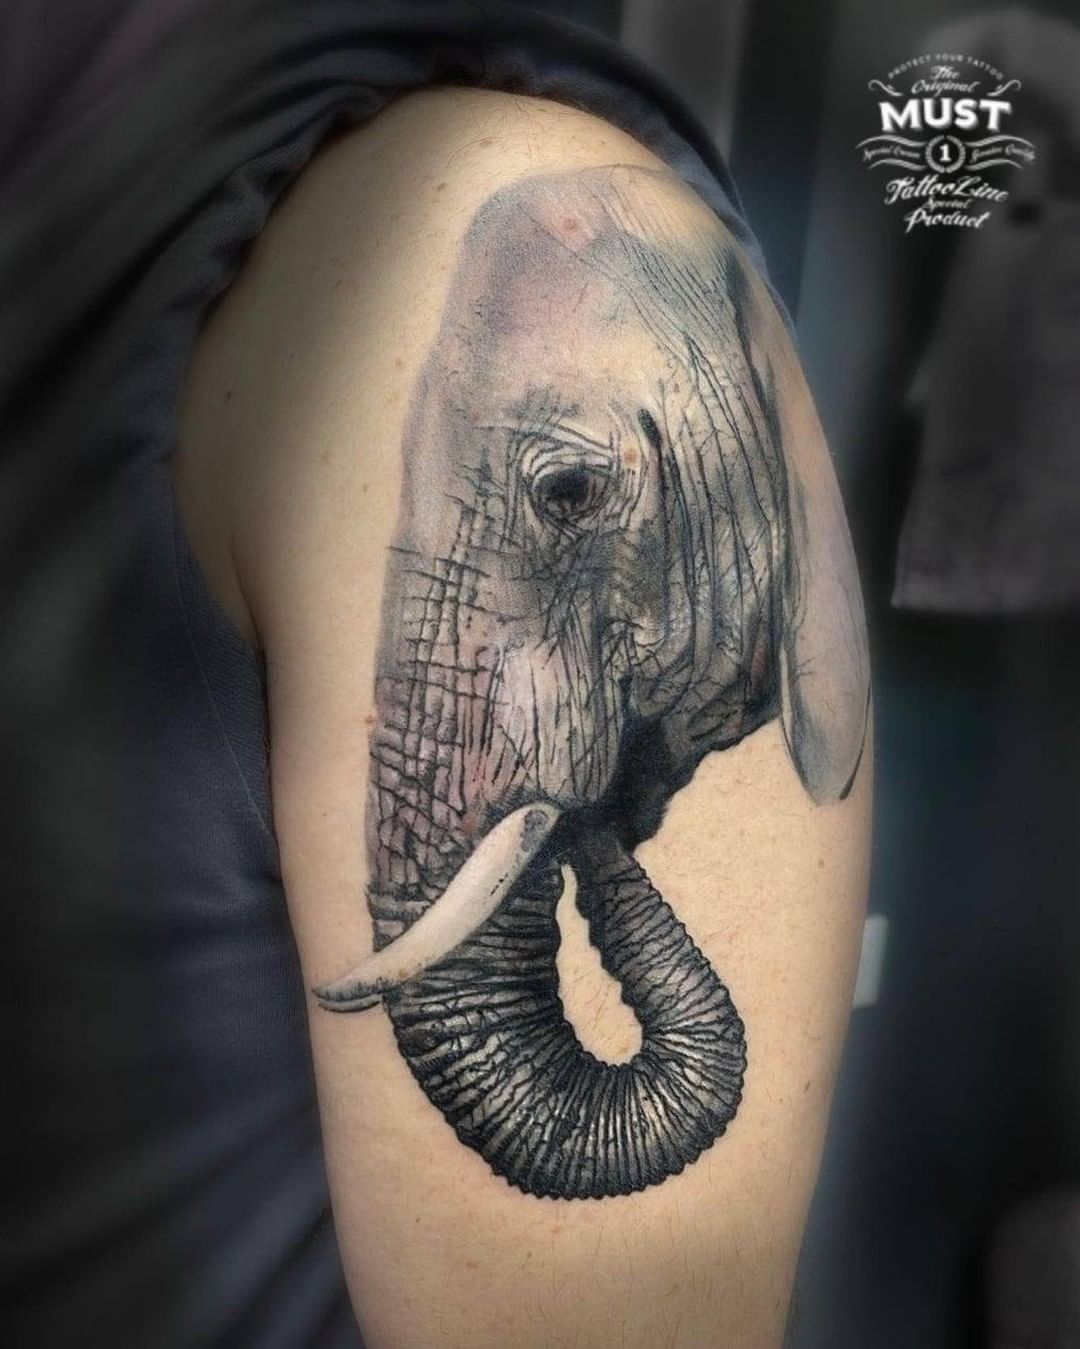 Tatuaje de elefante en el brazo.